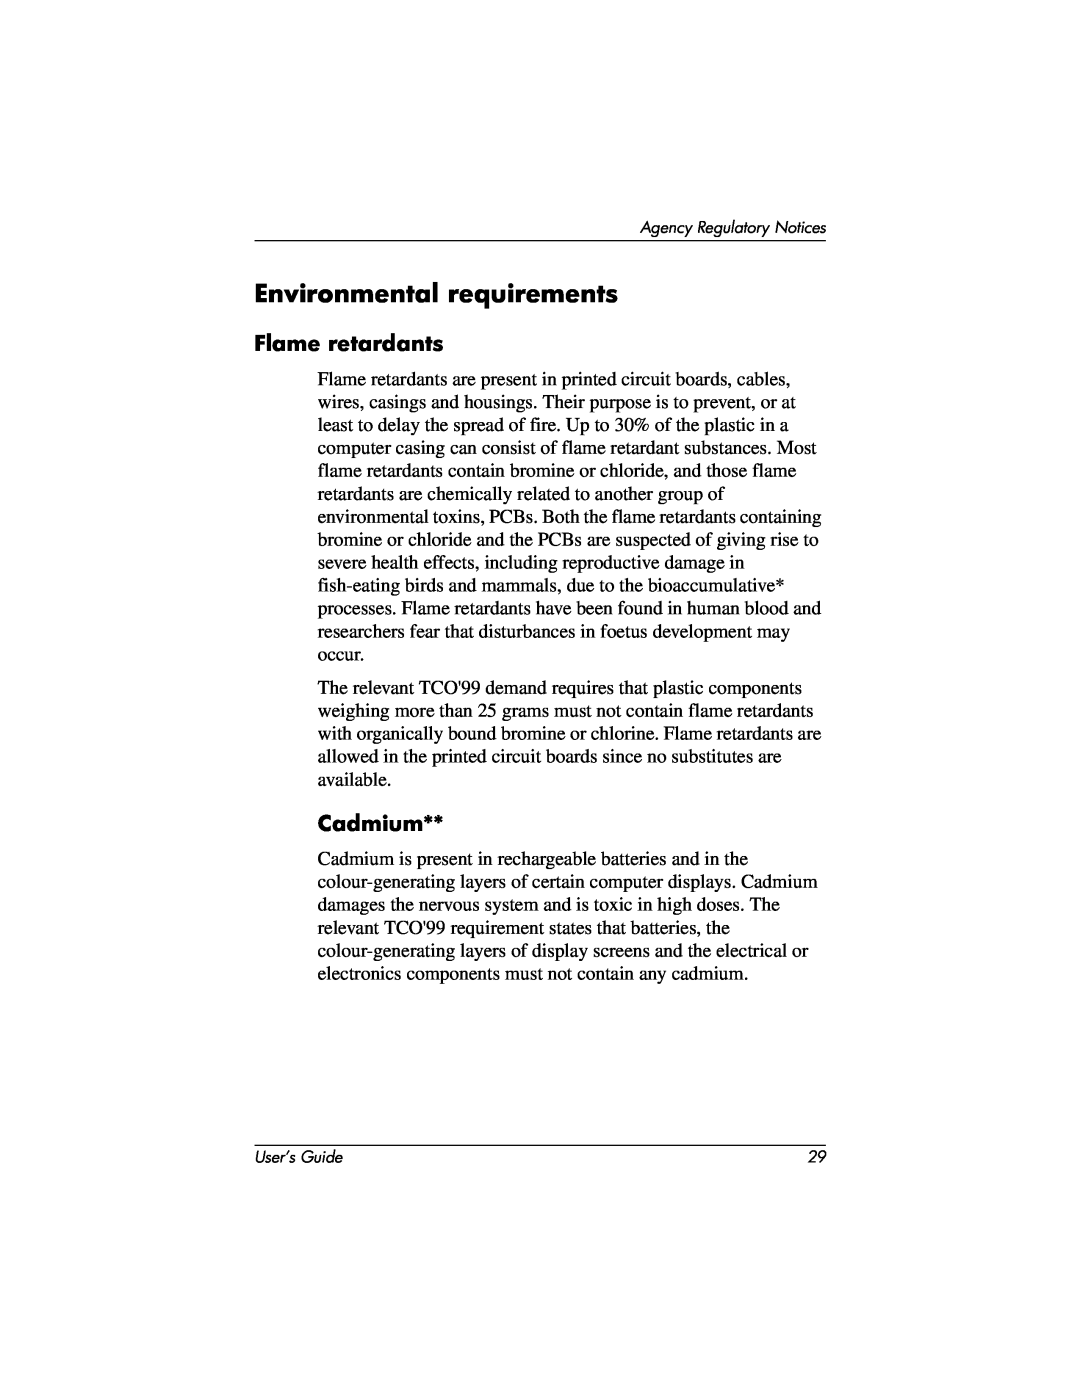 Compaq 2025 manual Environmental requirements, Flame retardants, Cadmium 